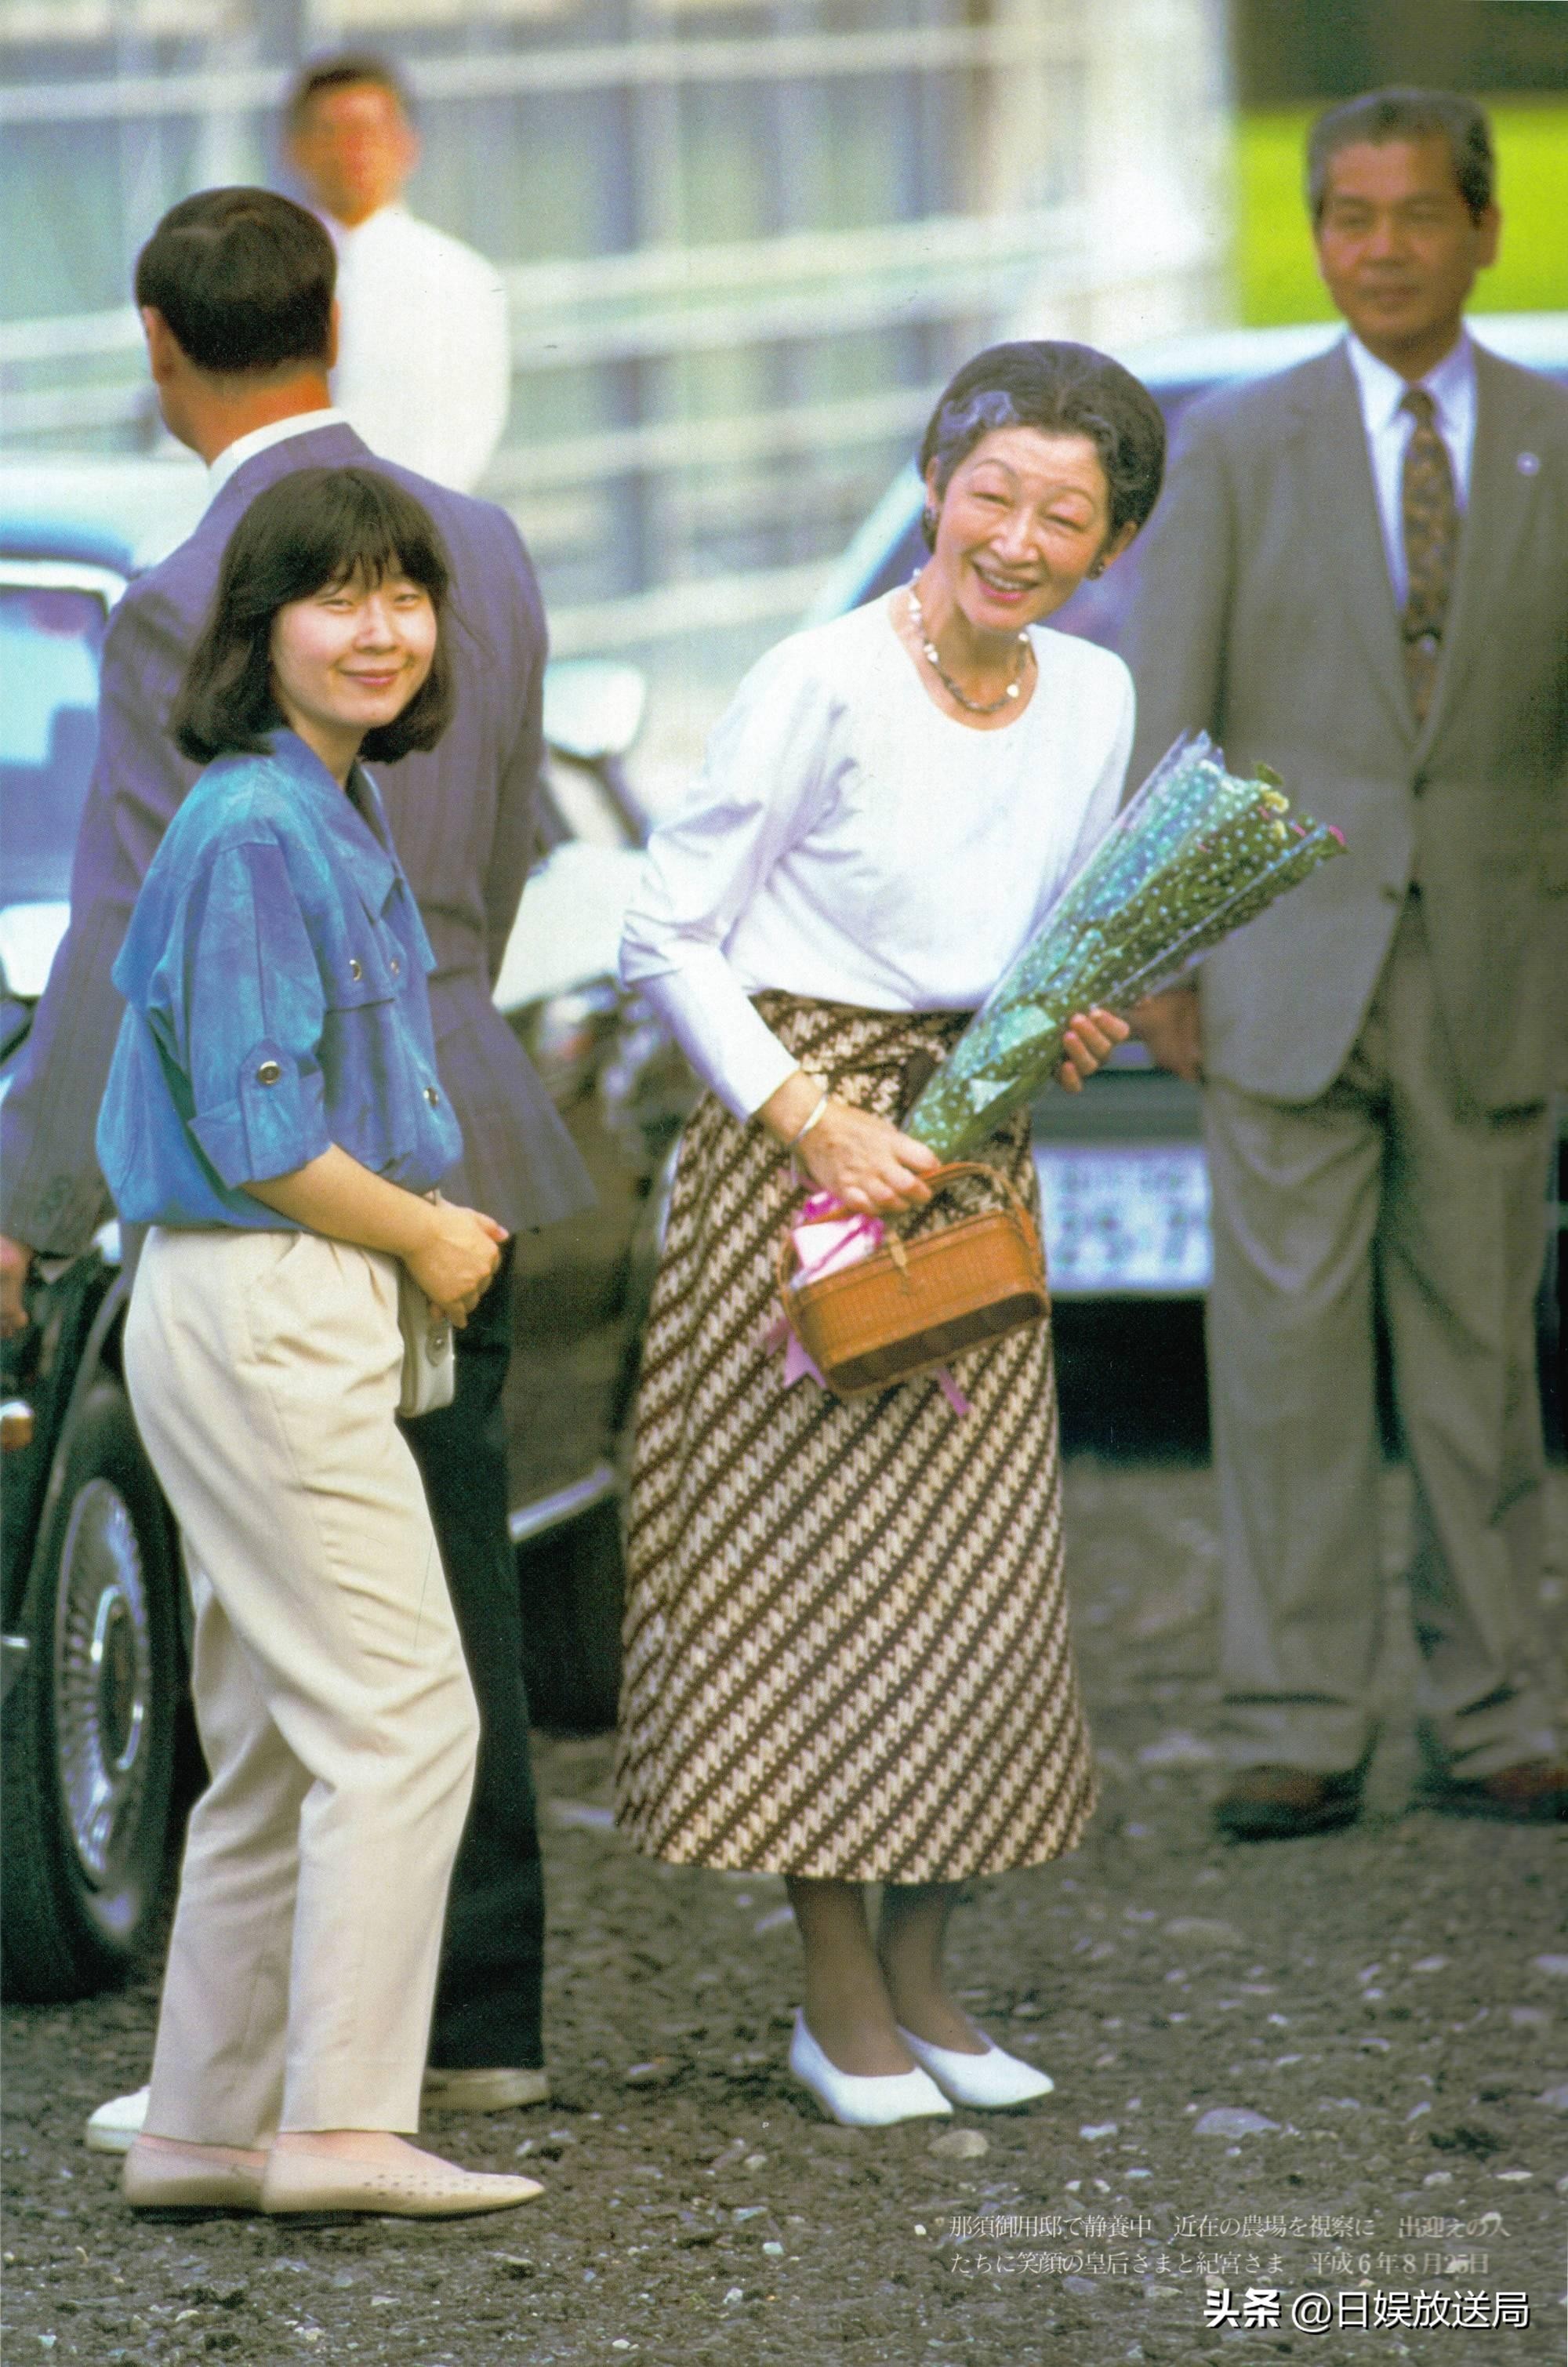 下嫁的日本皇室公主们—以下嫁为前提被抚养长大的皇女黑田清子